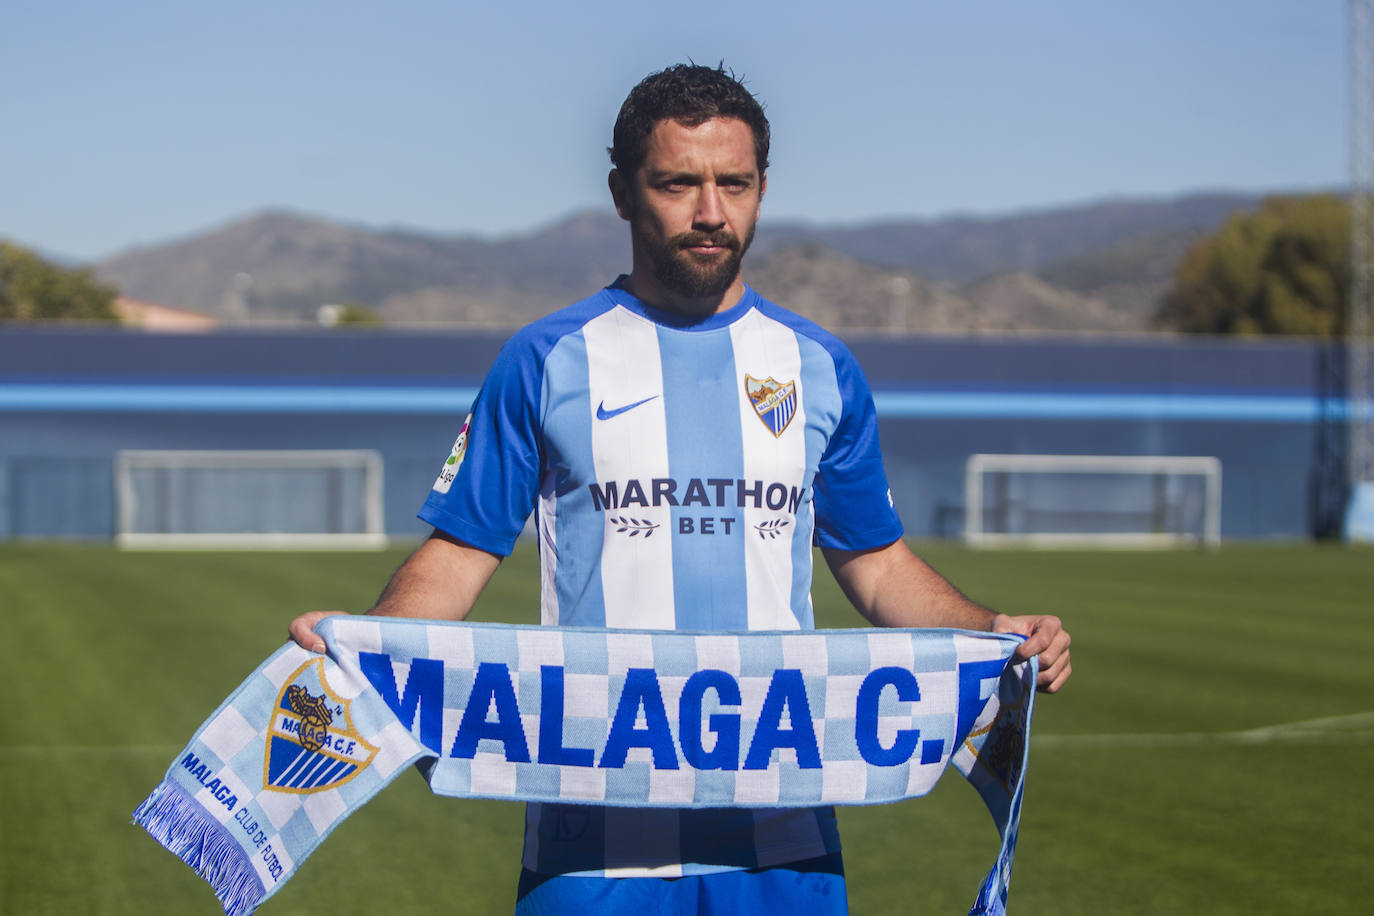 El centrocampista chileno, uno de los del Málaga de Champions, y que en 2017 volvió para ser testigo de un catastrófico descenso a Segunda, se retira del fútbol con 35 años. Aquí un repaso fotográfico a su paso por el Málaga en dos etapas muy distintas. 